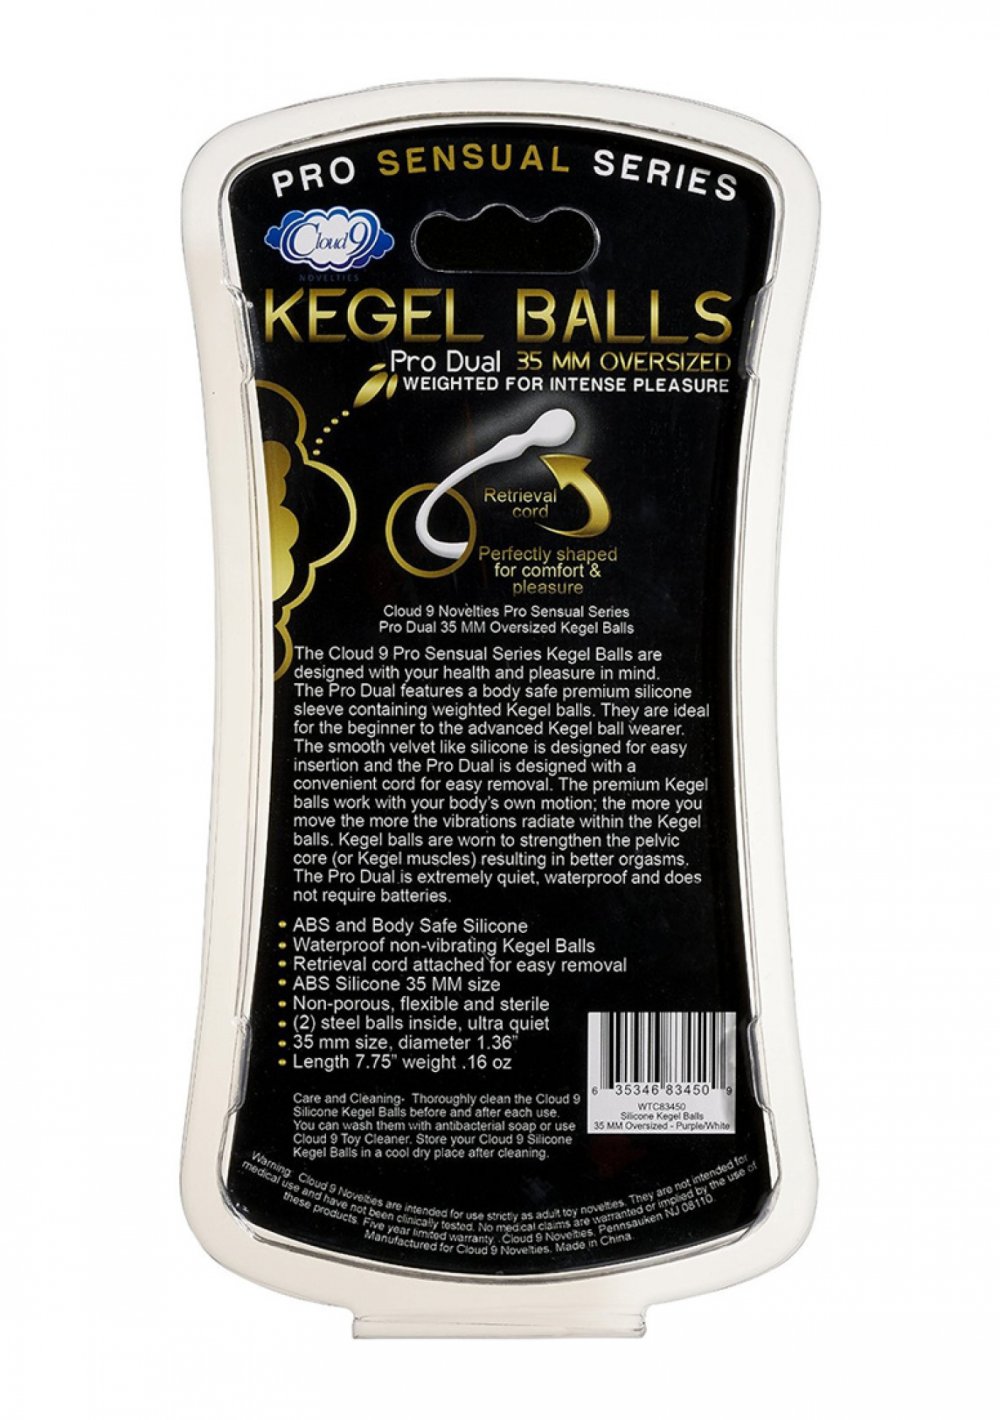 Pro Sensual Kegelball - 1.38" / 35 mm